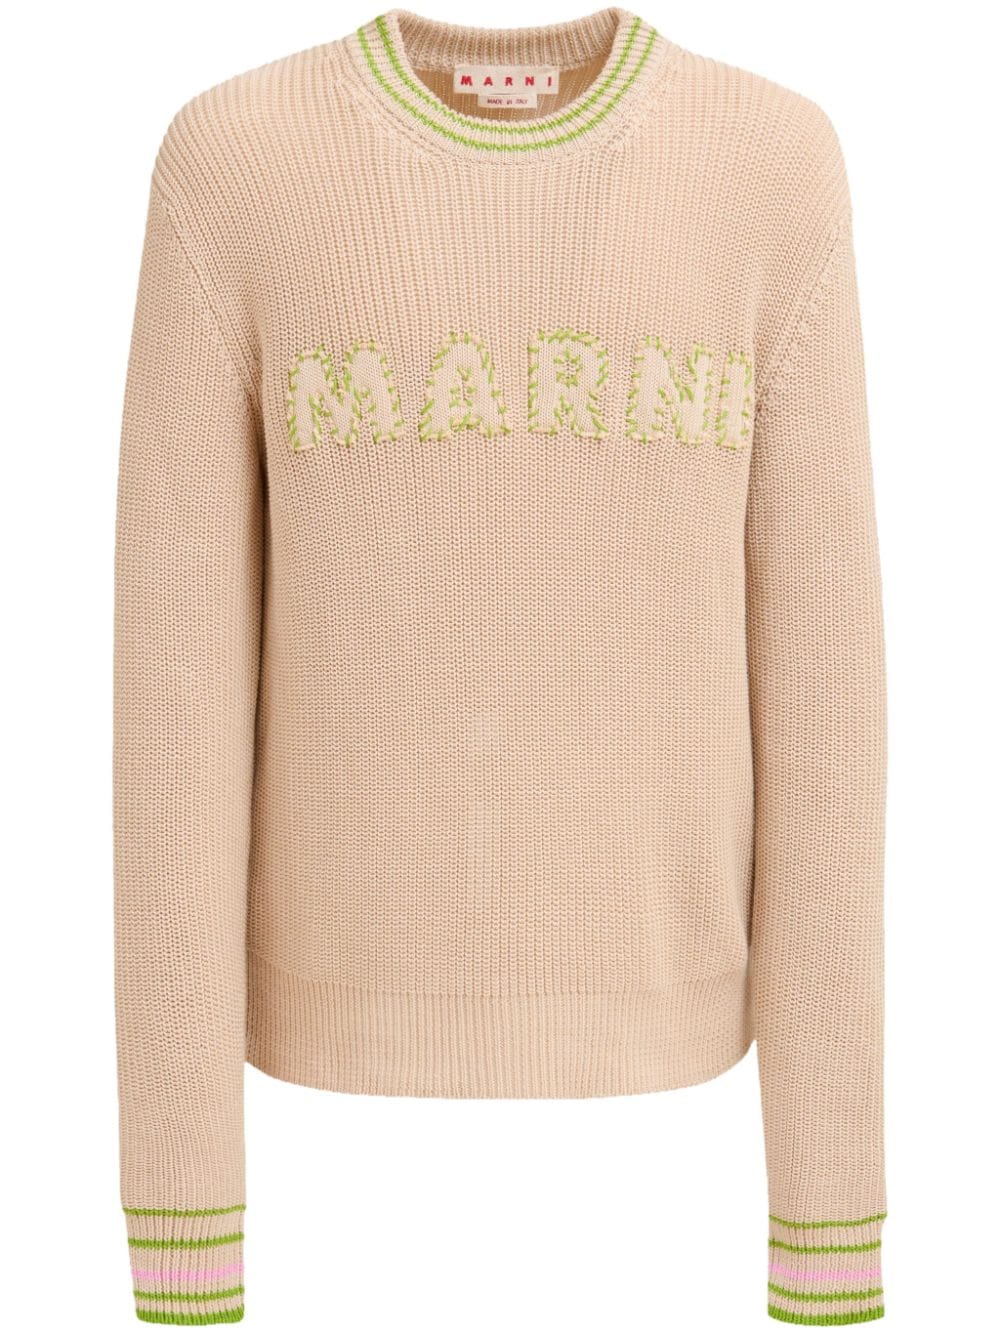 Marni logo-embroidery cotton jumper - Neutrals von Marni